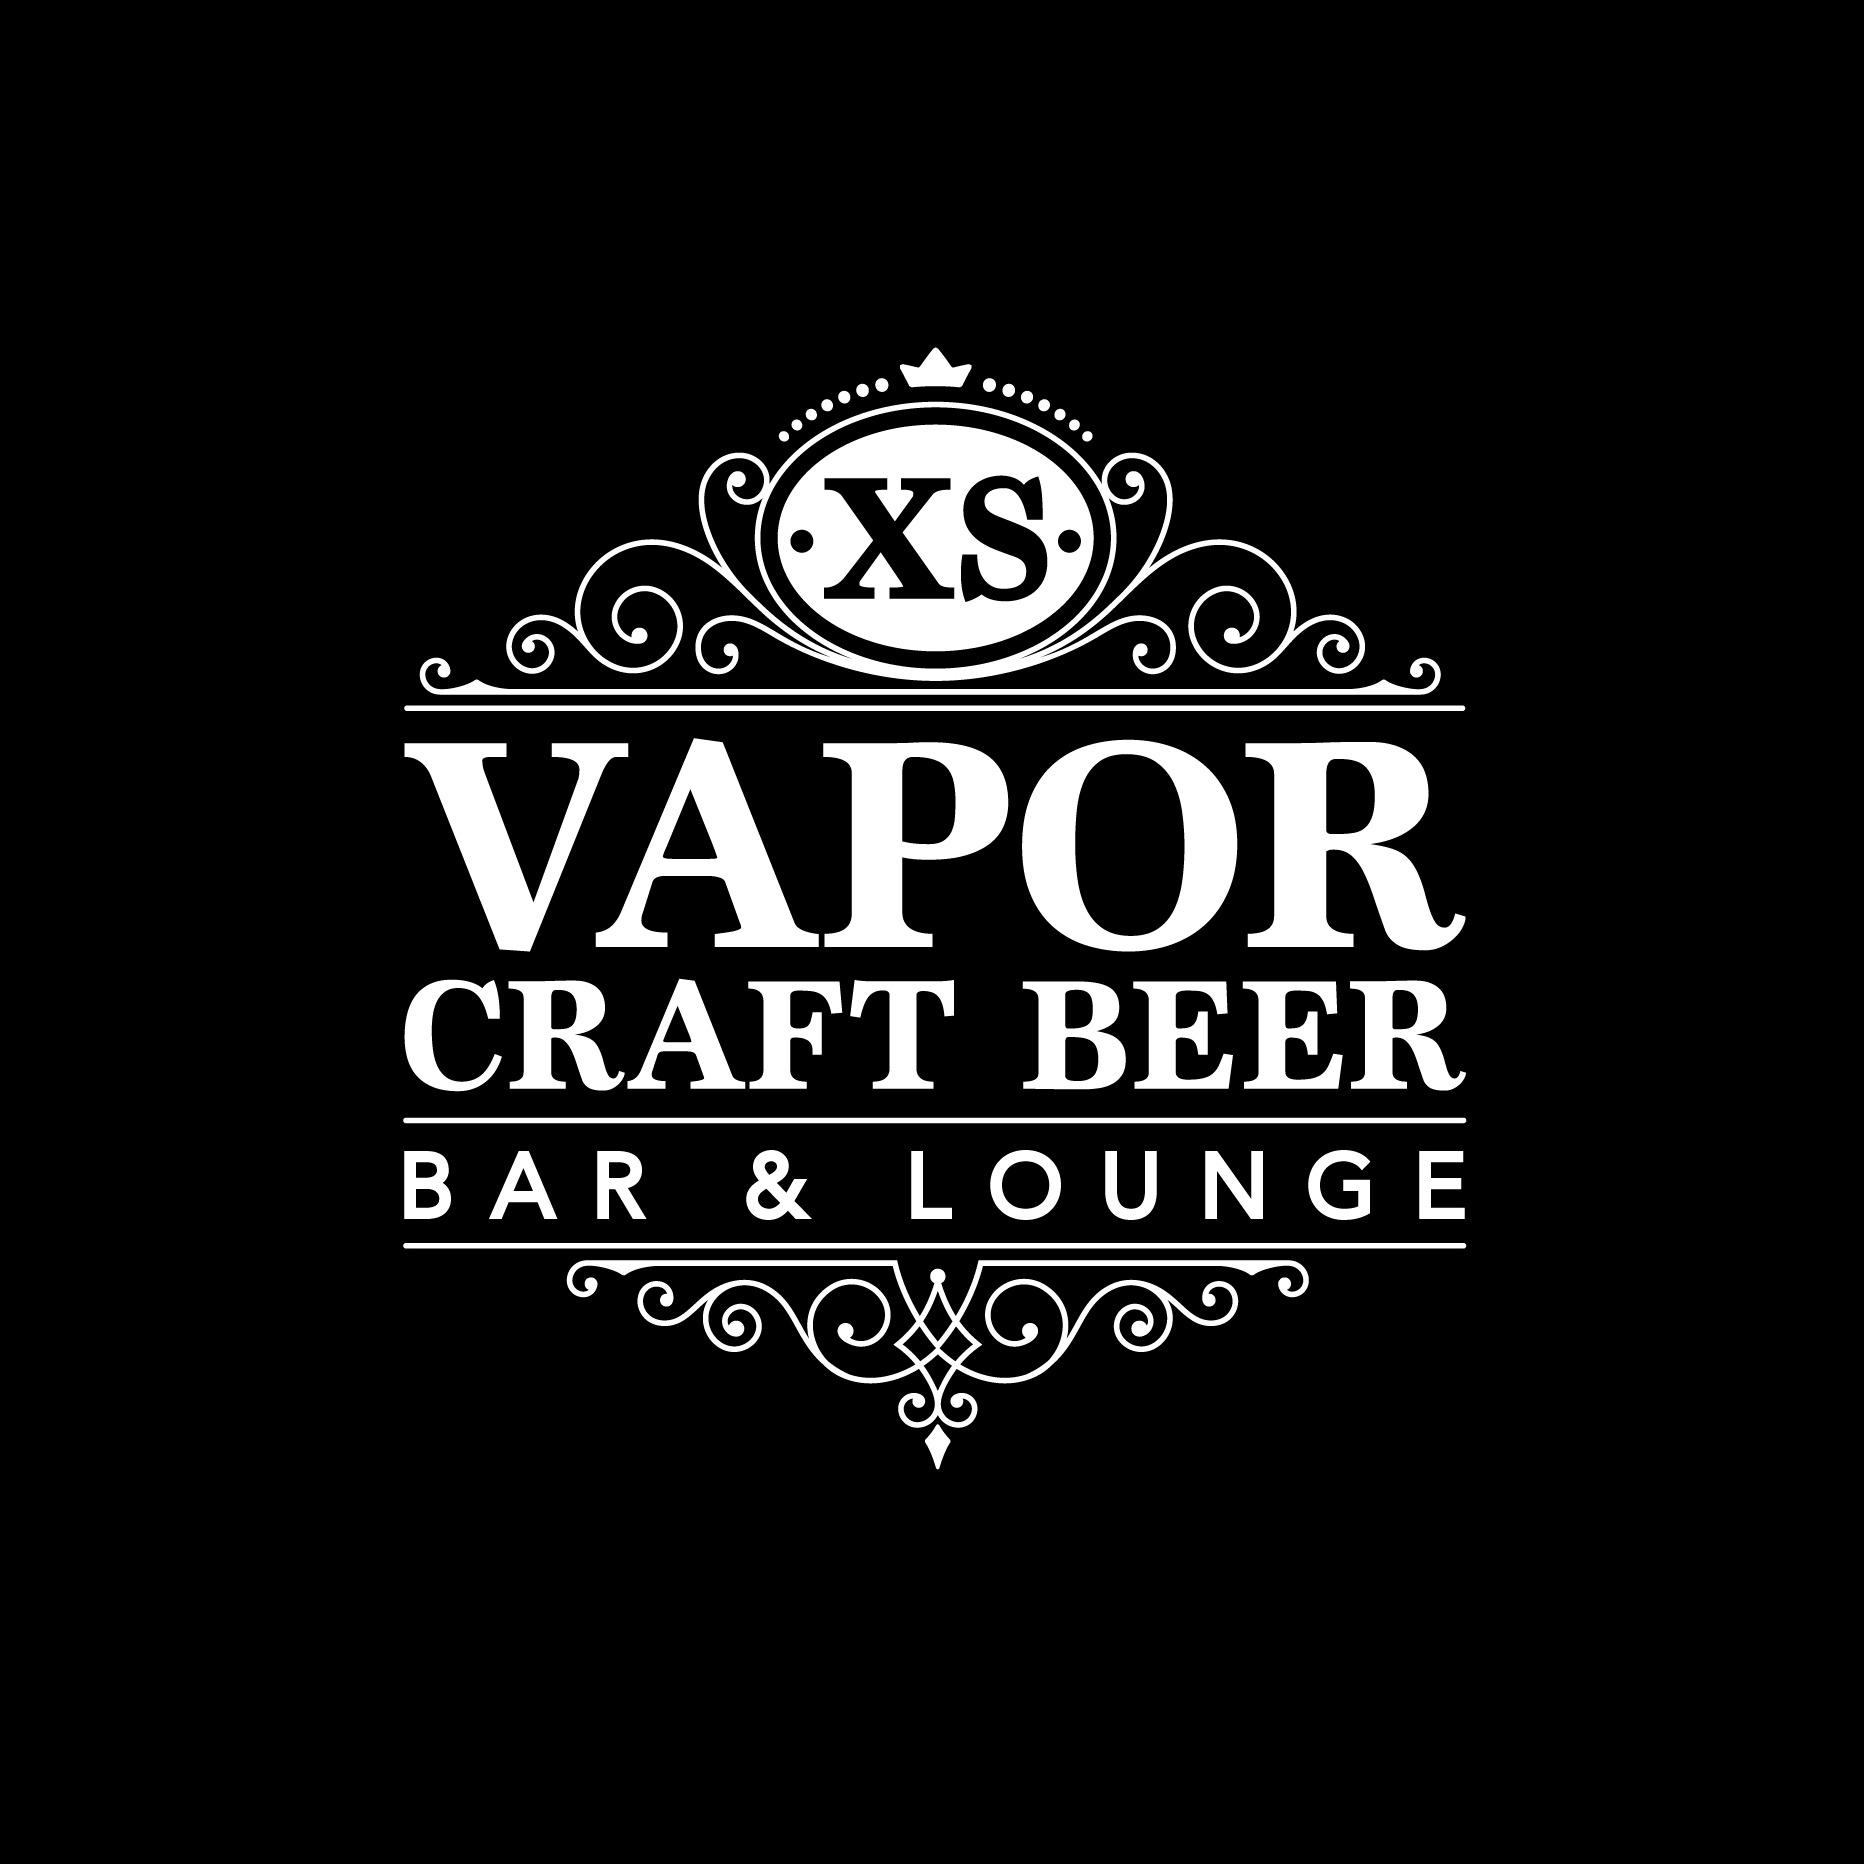 XS Vapor Craft Beer Bar and Lounge Photo